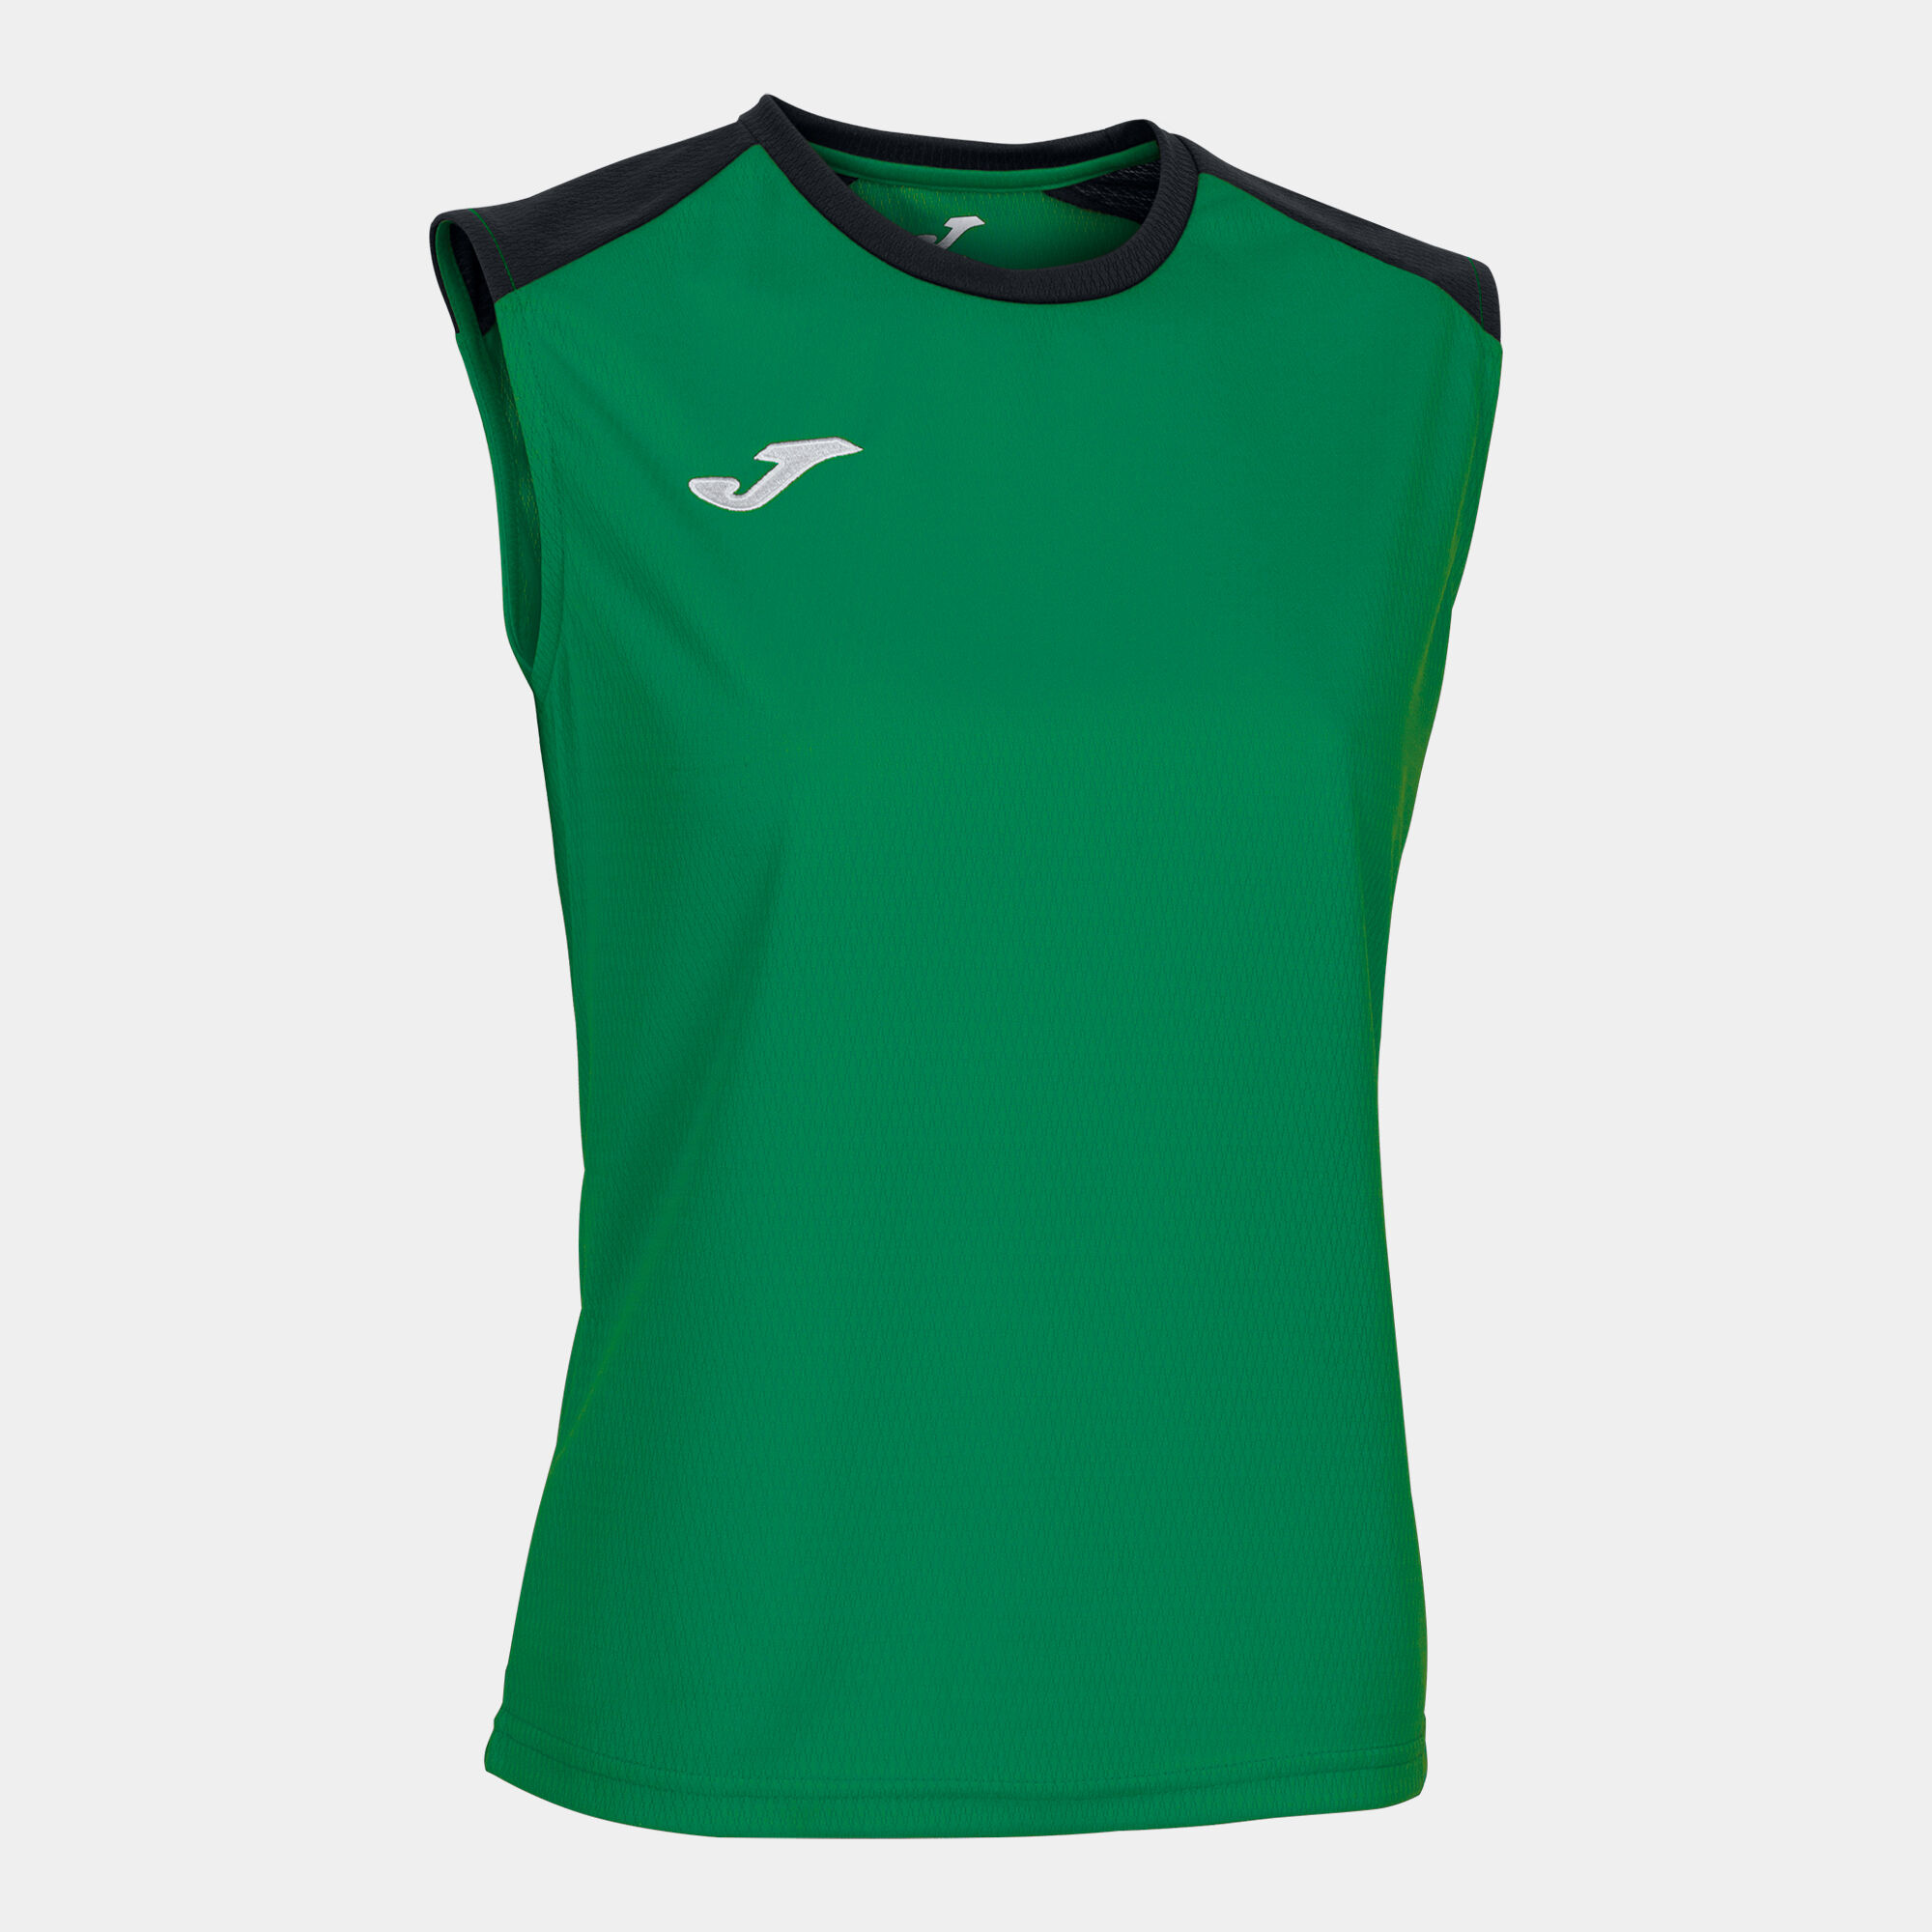 Schulterriemen-shirt frau Eco Championship grün schwarz